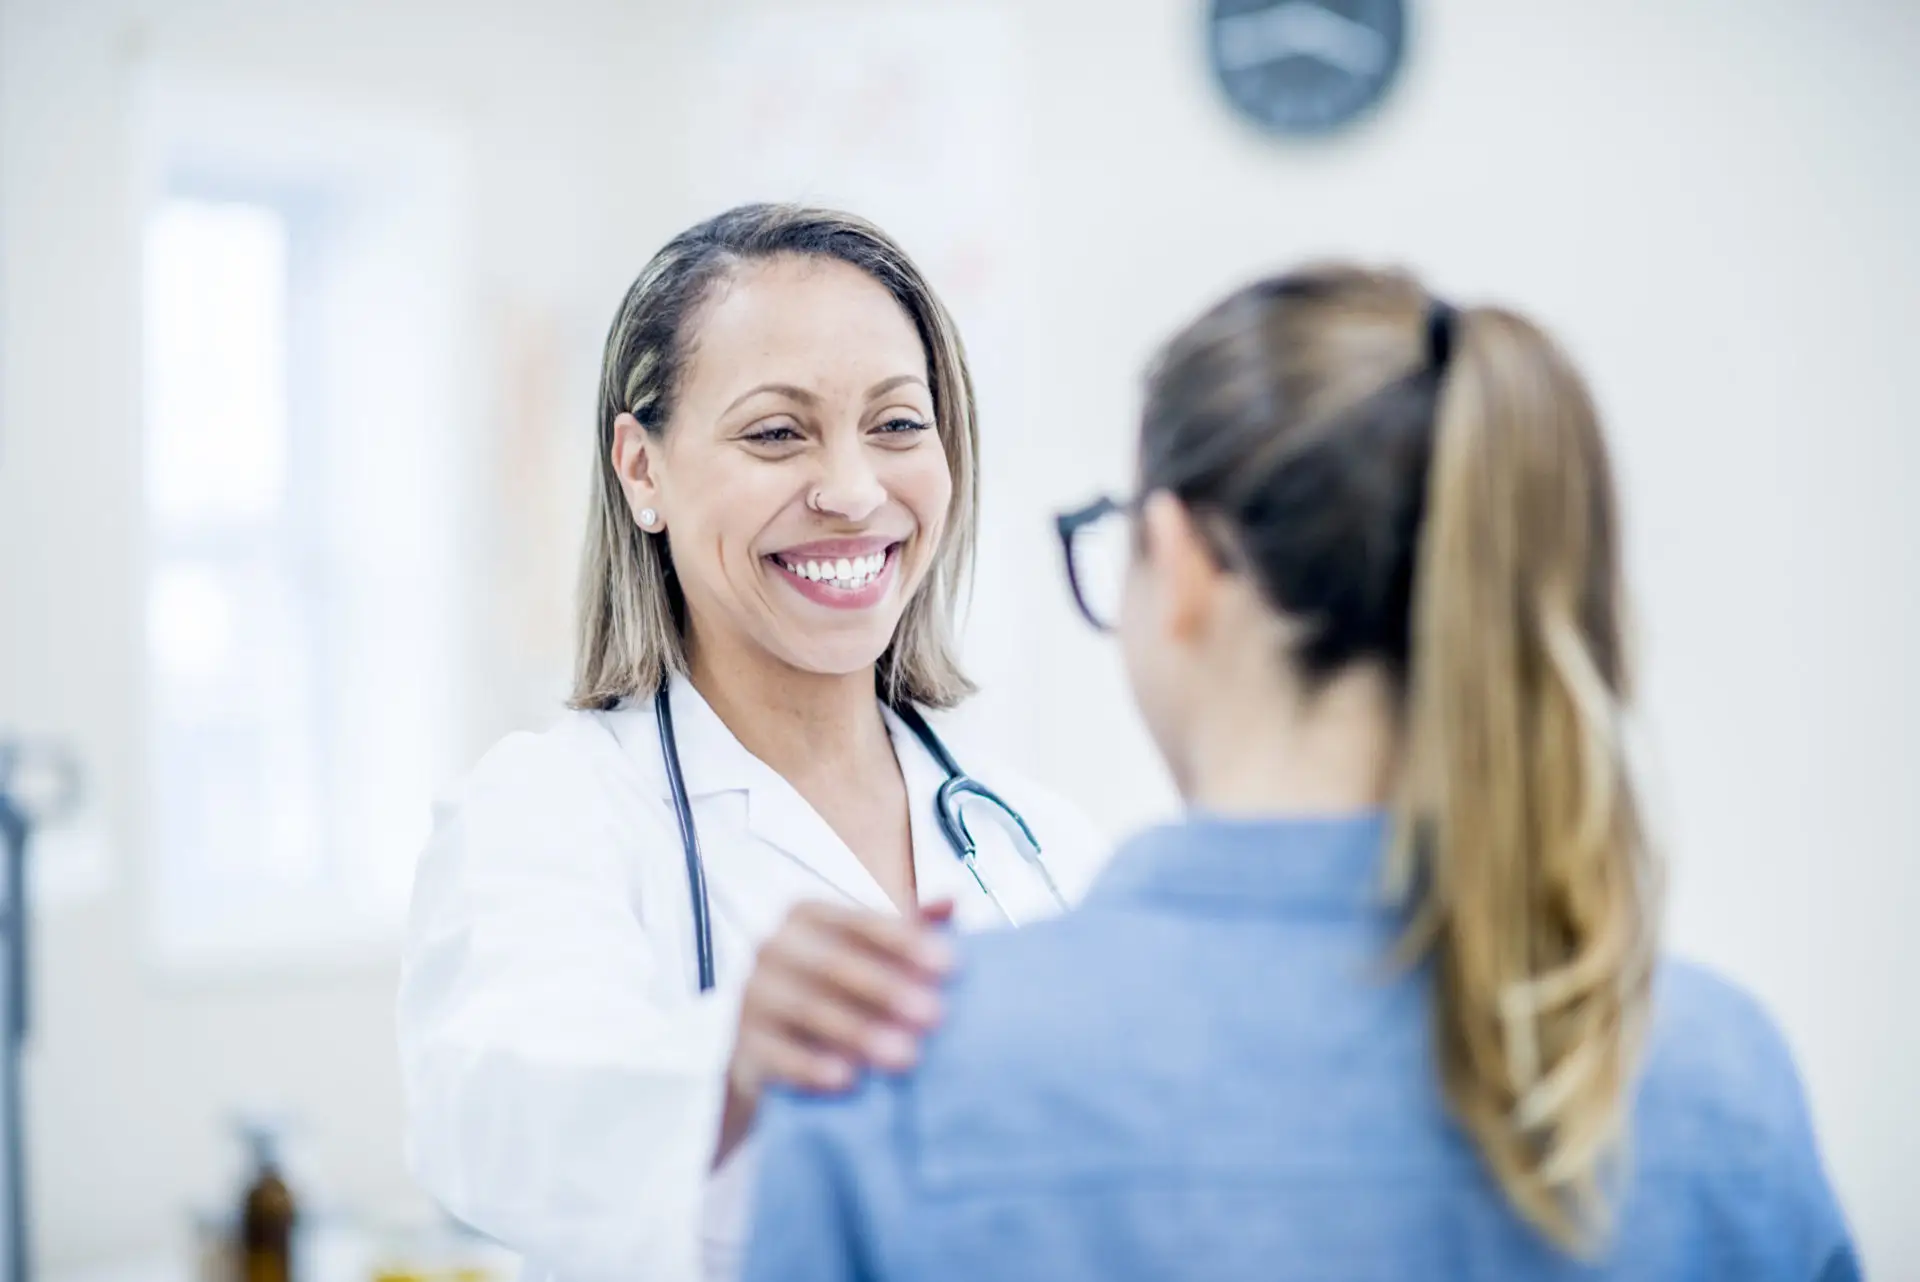 Una profesional sanitaria sonríe con la mano en el hombro de un paciente